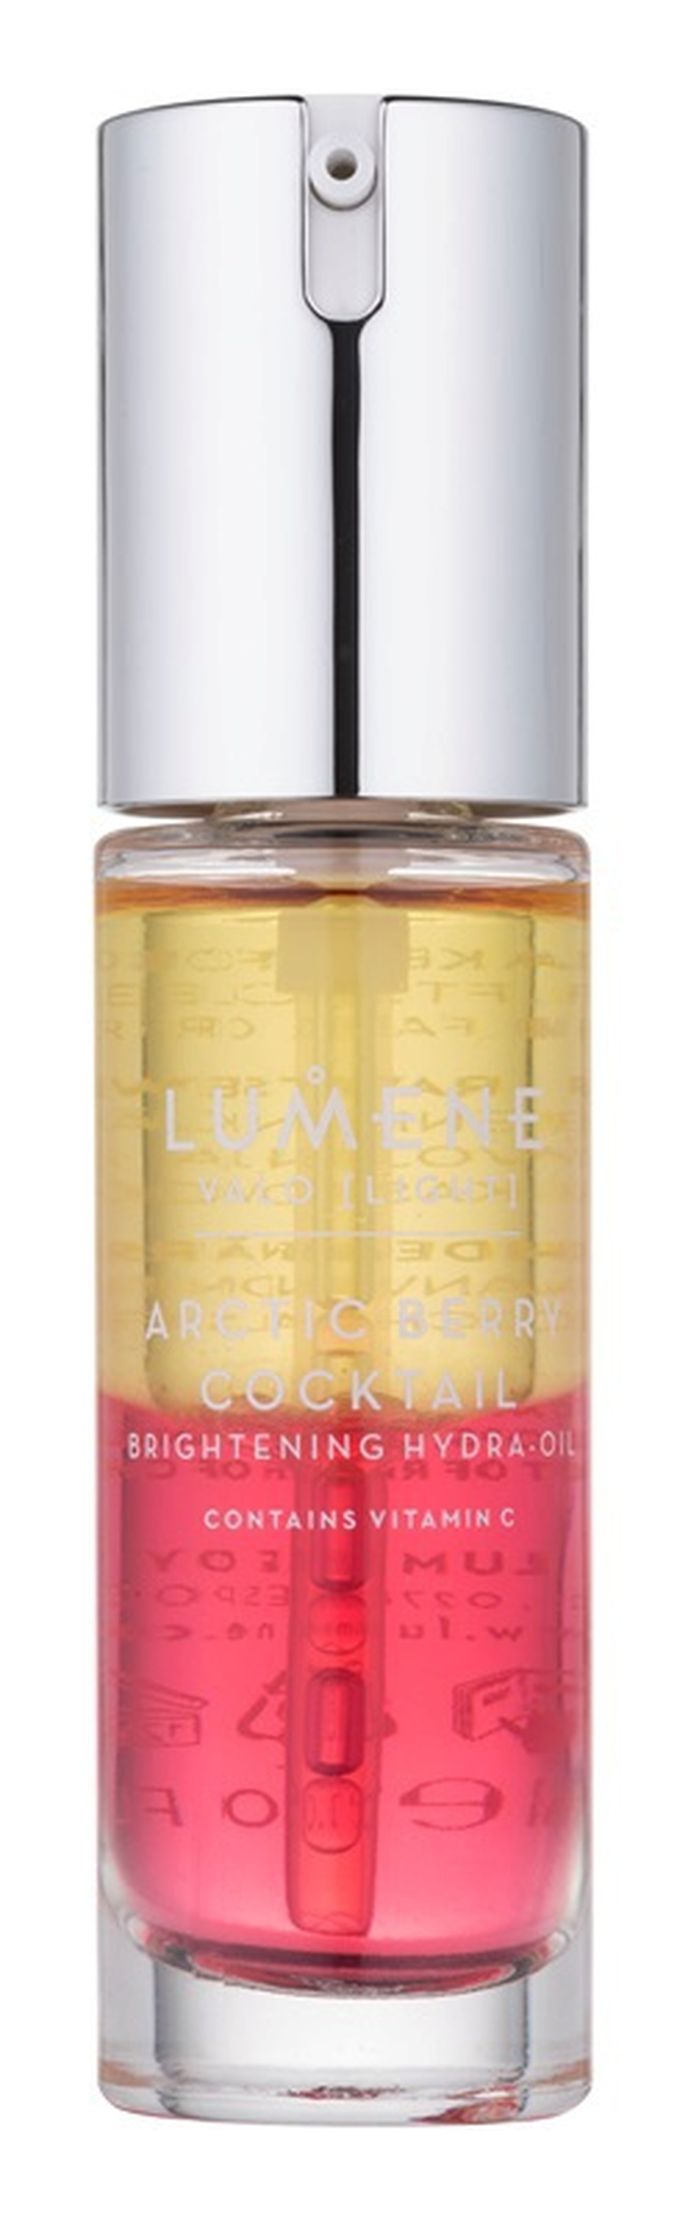 Rozjasňující a hydratační olej Arctic Berry Cocktail Brightening, Lumene, koupíte v síti parfumérií FAnn nebo na fann.cz, 919 Kč/30 ml